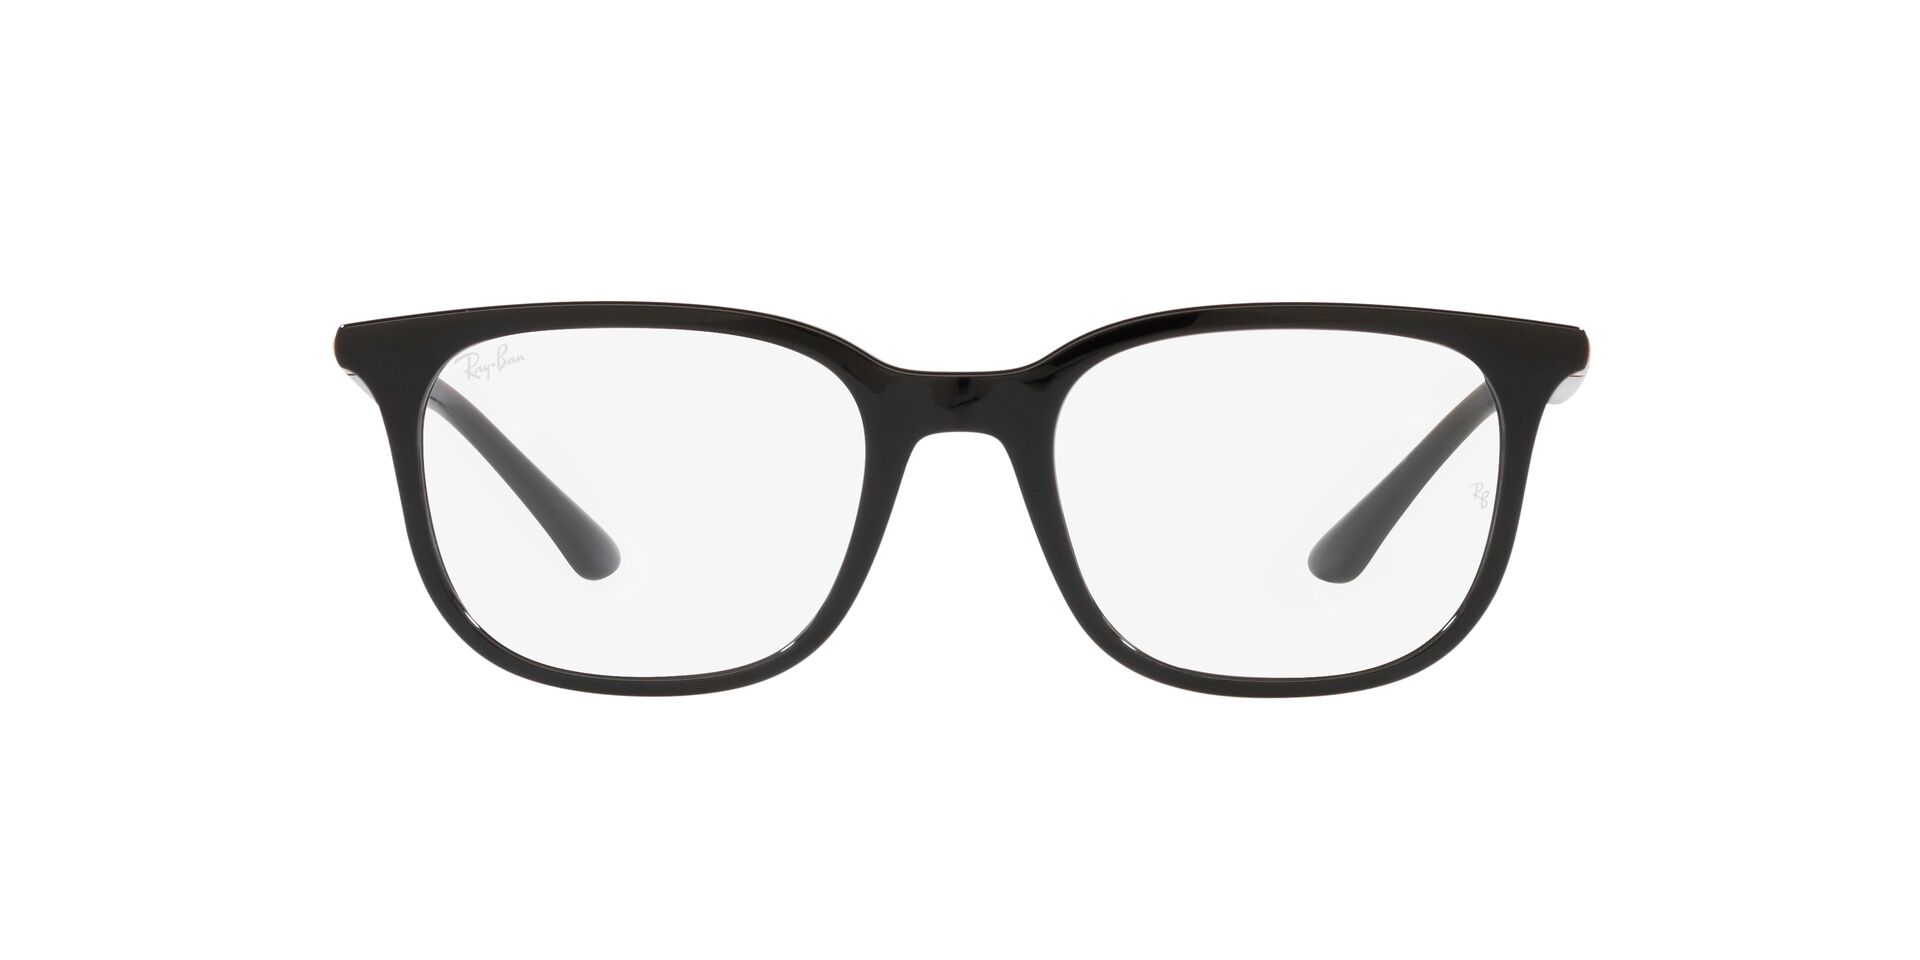 Ray Ban l 經典風華方框眼鏡 經典黑